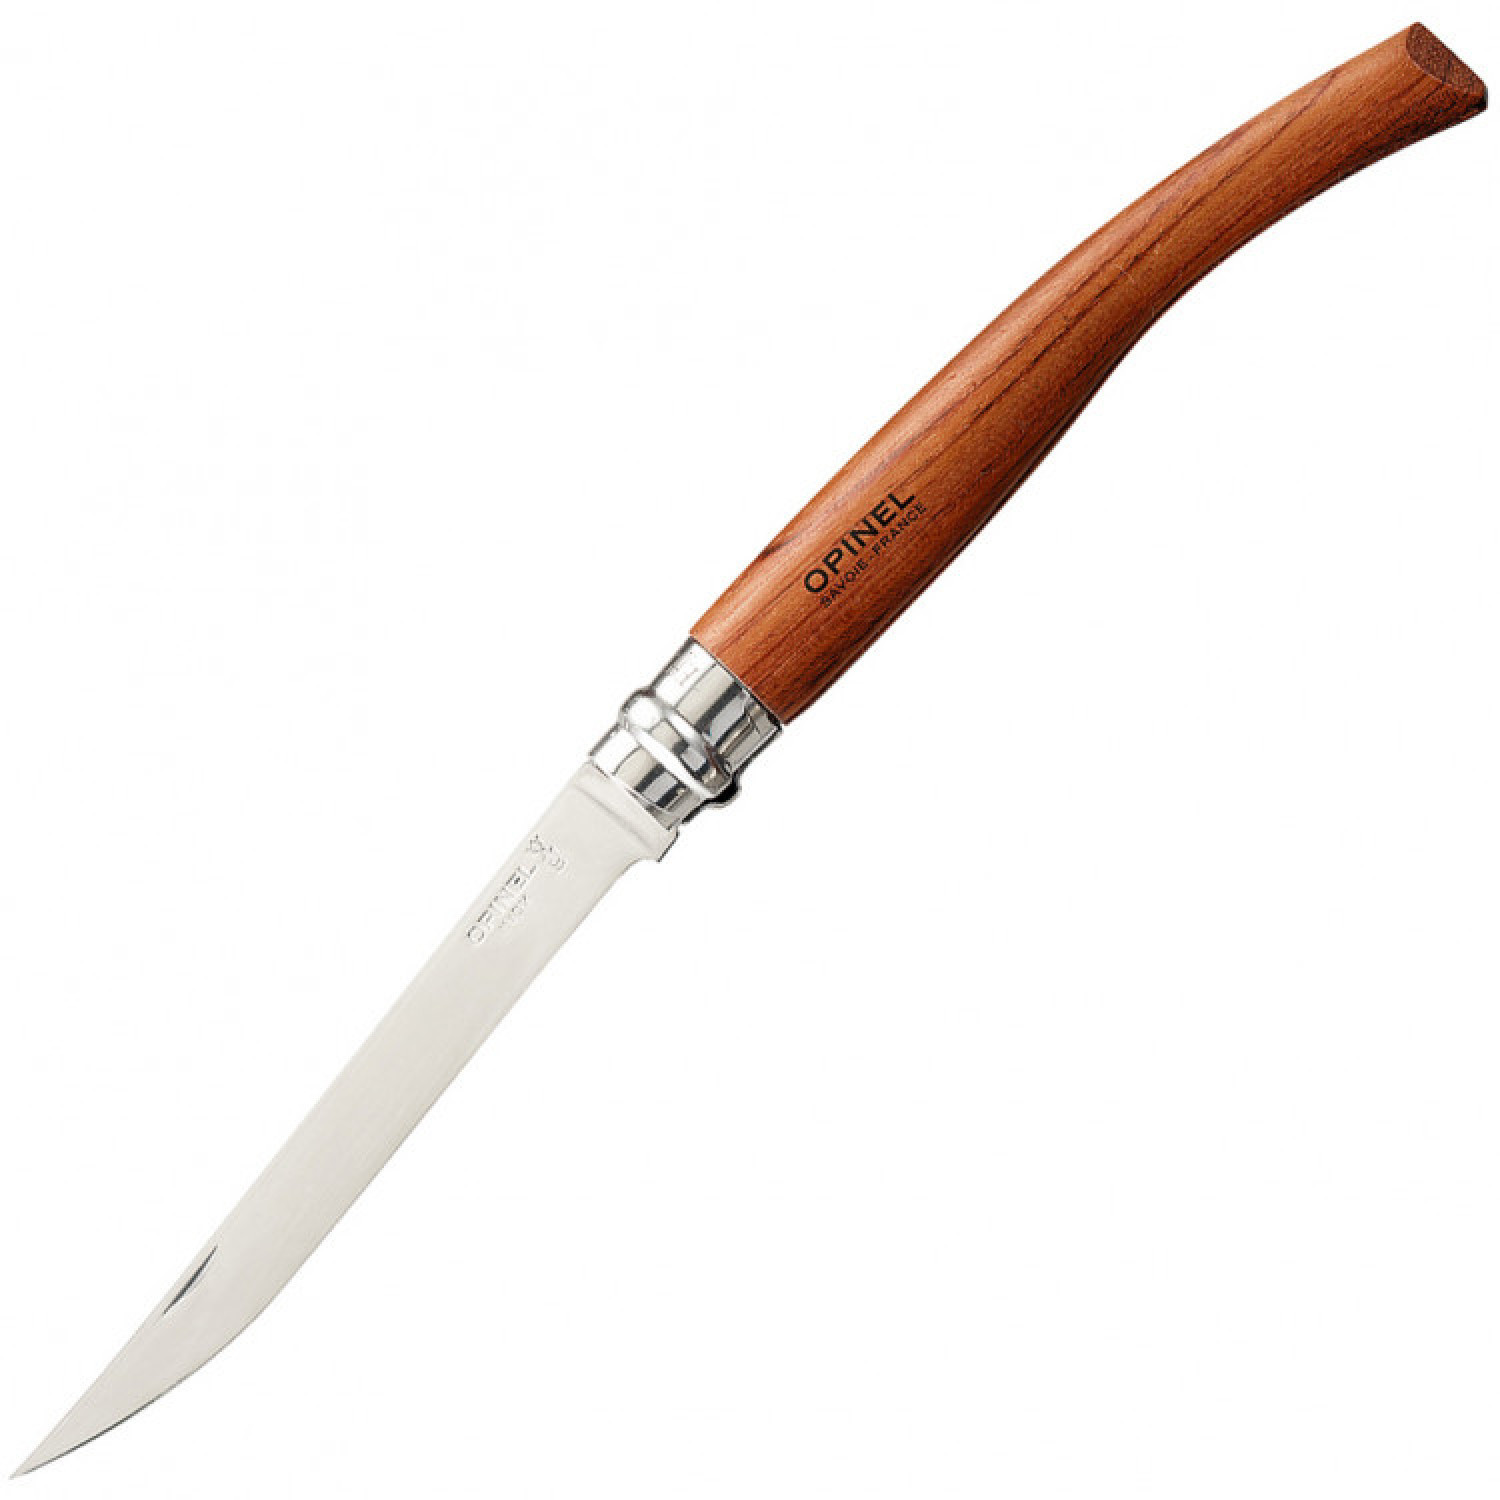 Нож складной филейный Opinel №12 VRI Folding Slim Bubinga, сталь Sandvik 12C27, рукоять из дерева бубинго, 000011